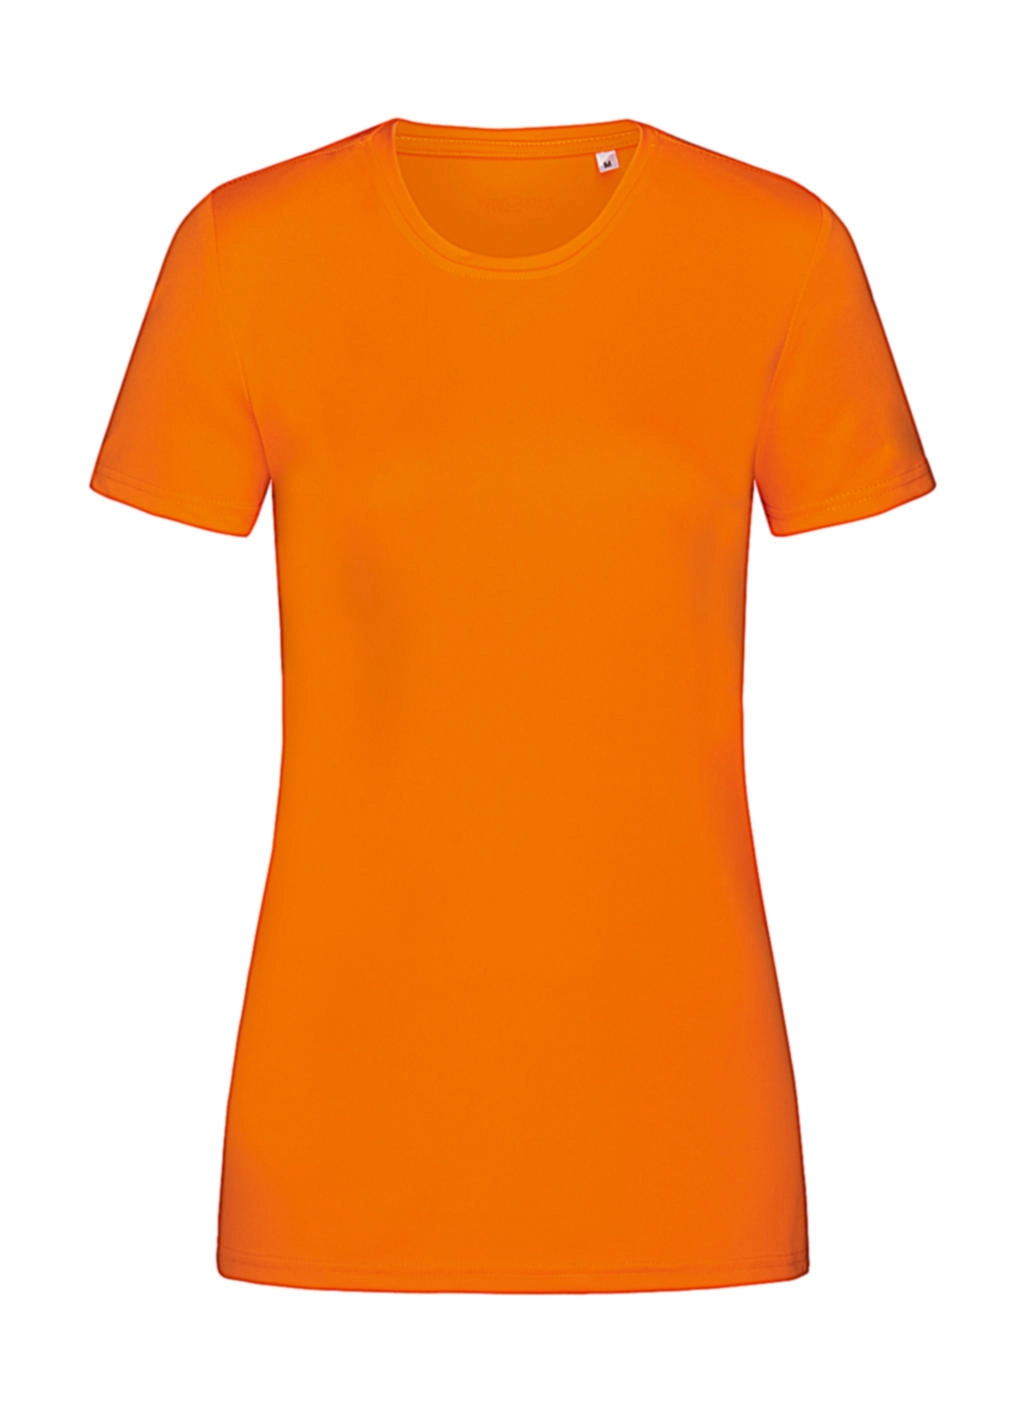 Sports-T Women zum Besticken und Bedrucken in der Farbe Cyber Orange mit Ihren Logo, Schriftzug oder Motiv.